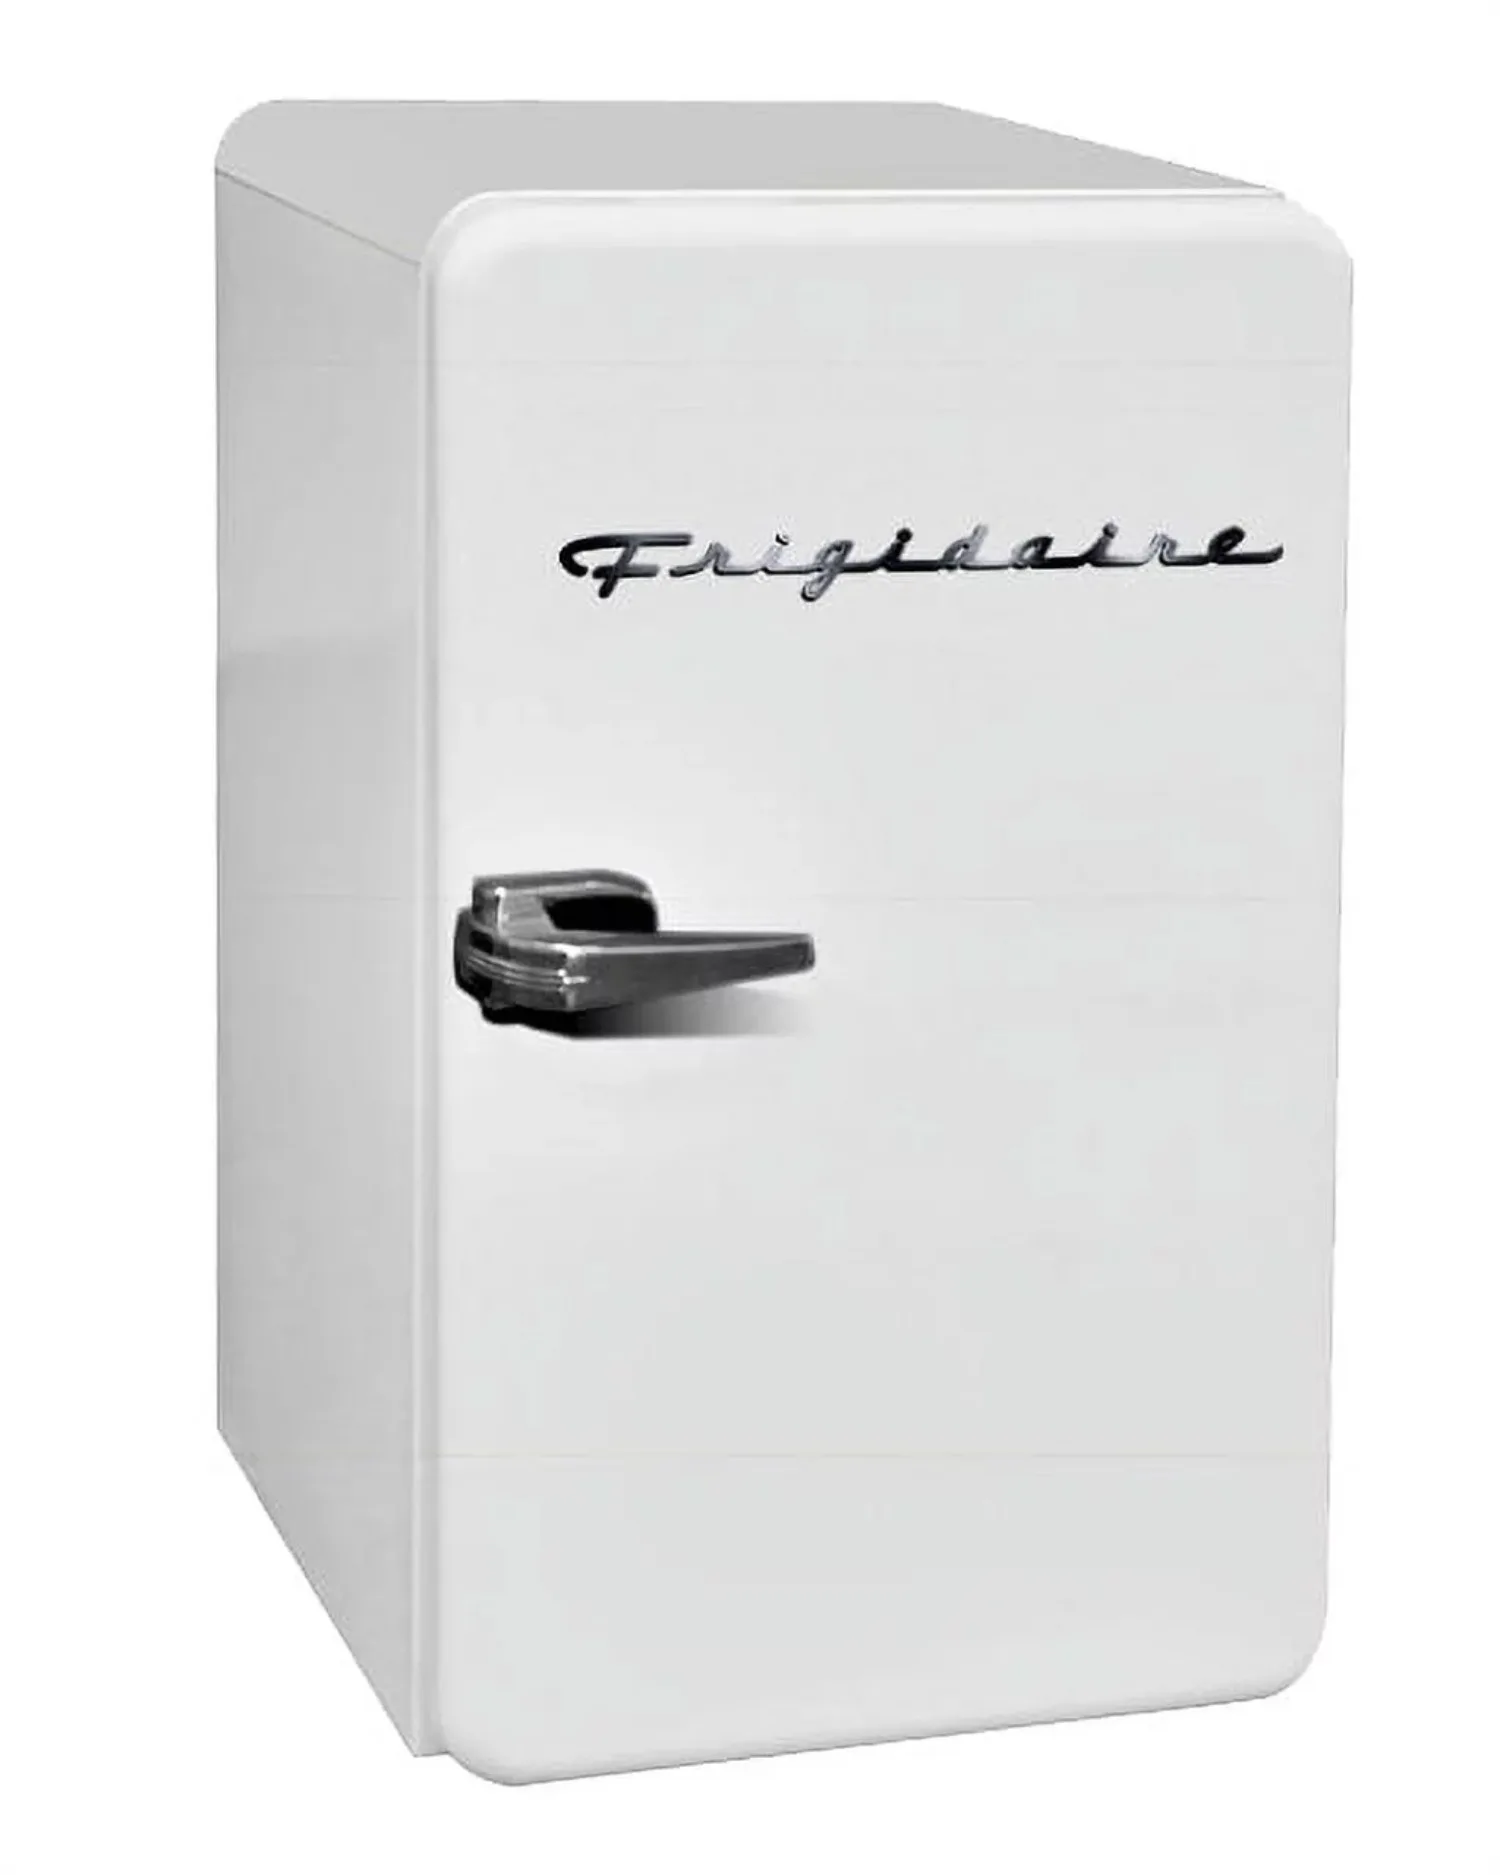 

3,2 куб. Фут. Однодверный компактный ретро-холодильник EFR372, белый мини-холодильник. США. Новинка